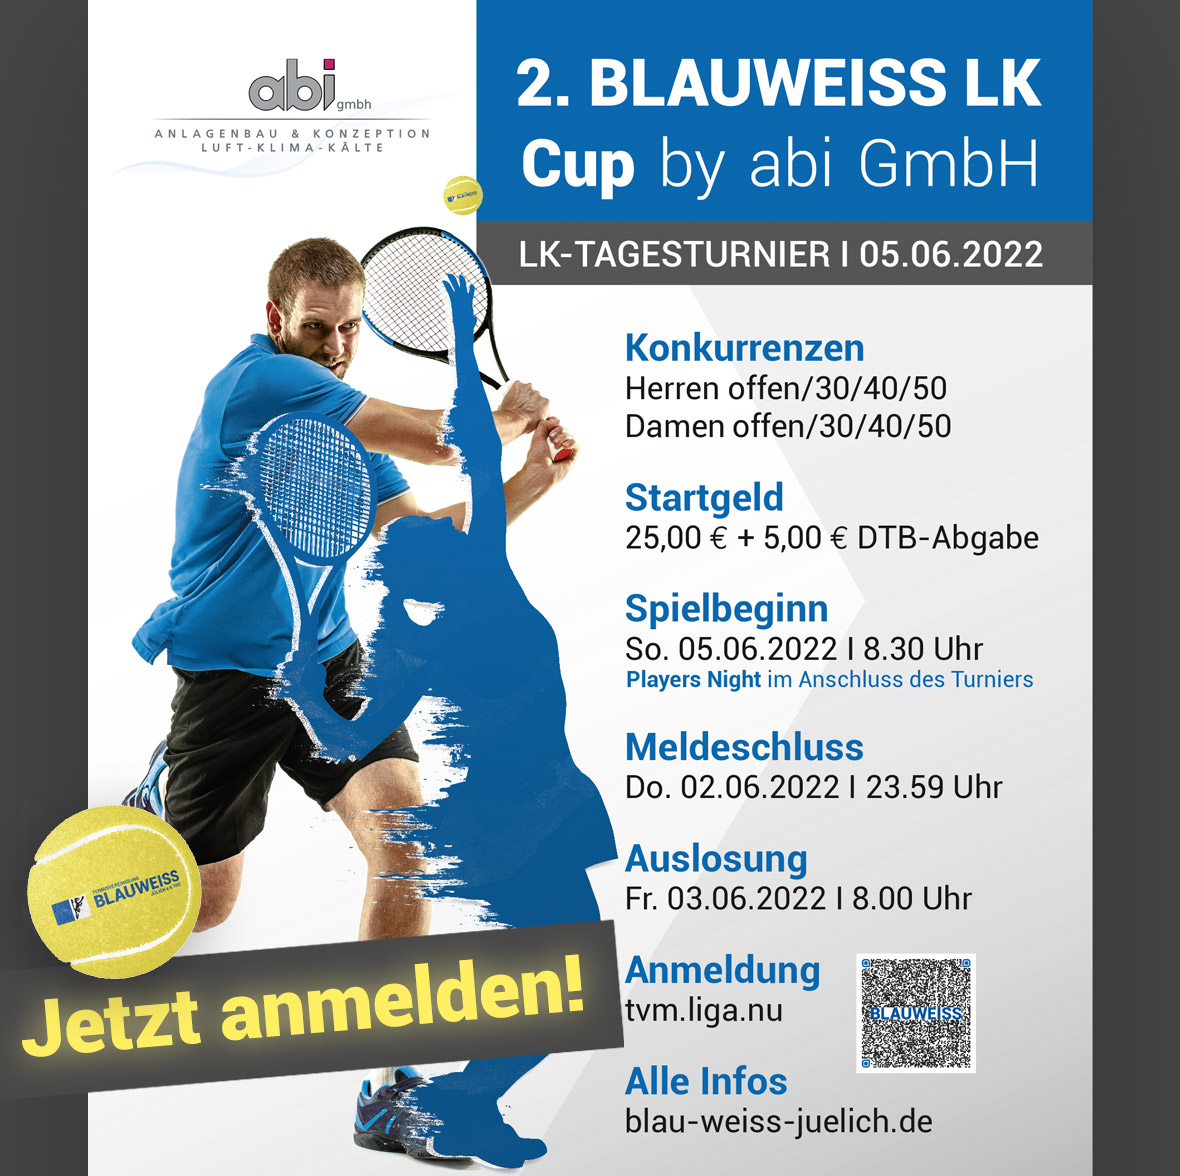 Freut euch auf den 2. BLAUWEISS LK Cup by abi am 05.06.2022!